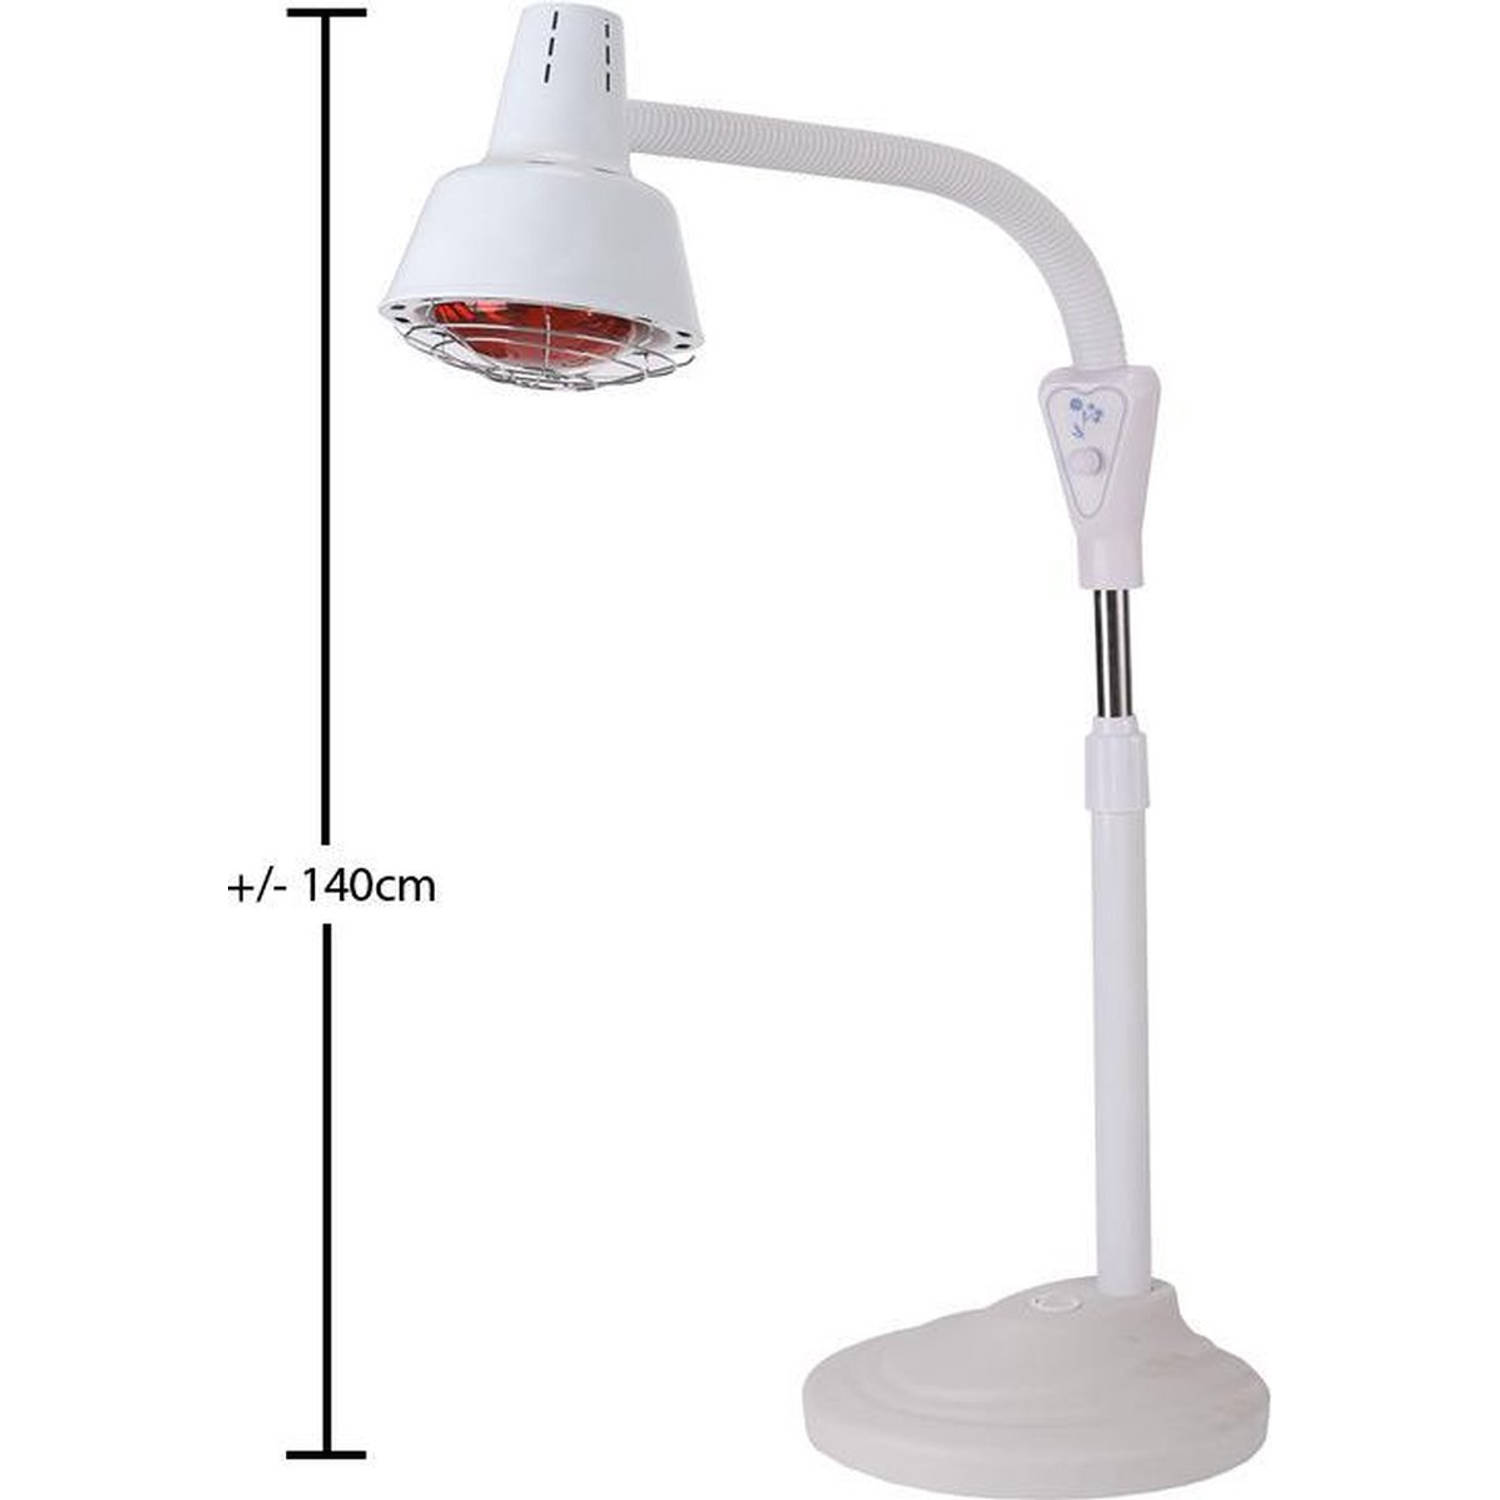 Infraroodlamp 275W - Warmtelamp tegen spier- en gewrichtspijn - Infraroodtherapie - Wit